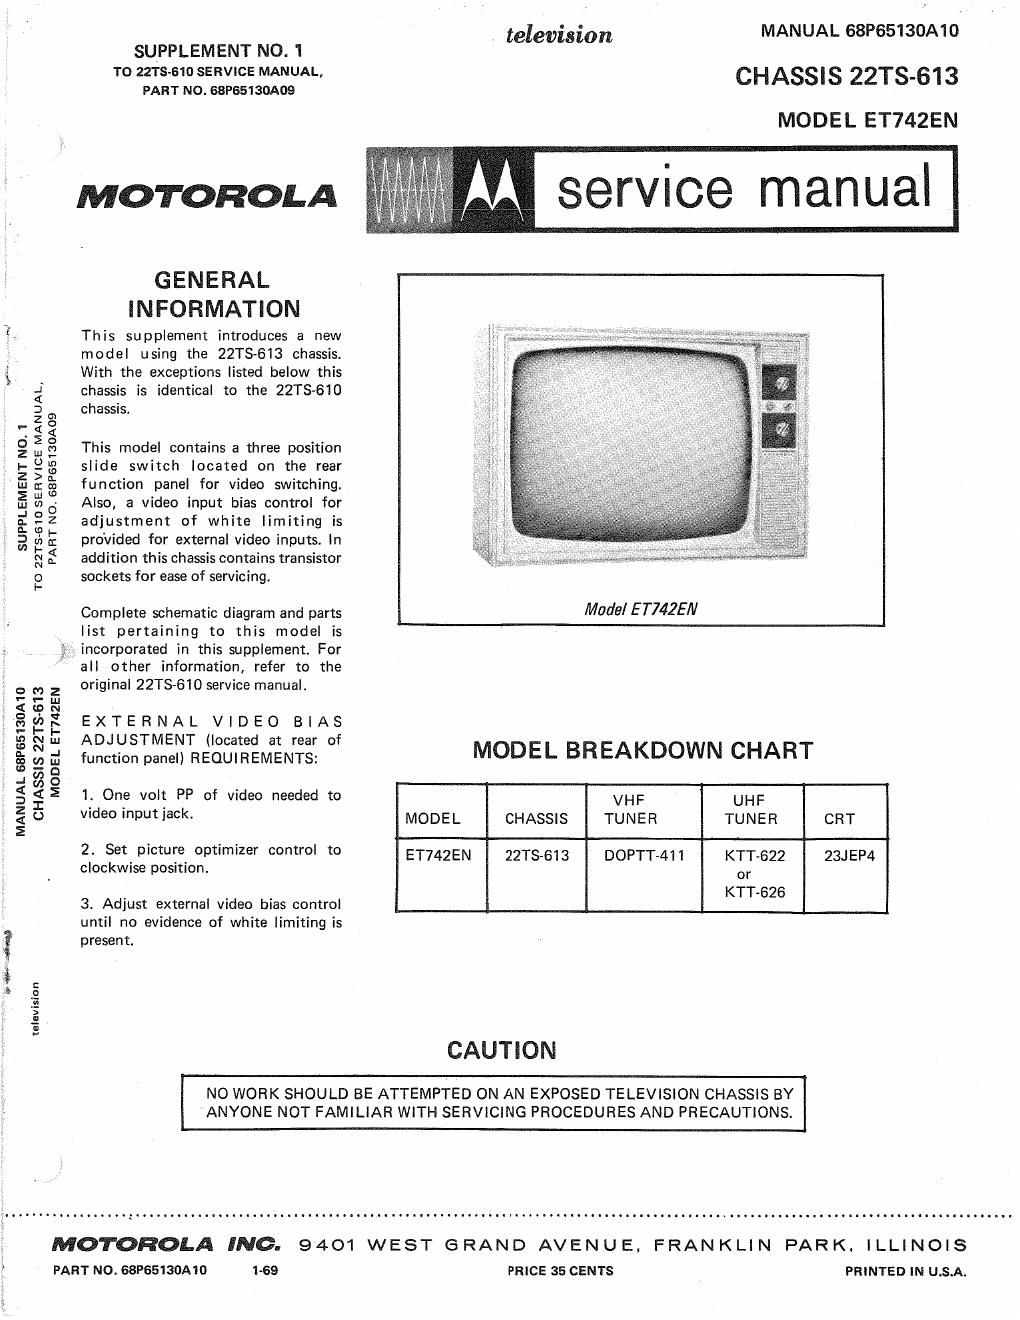 motorola et 742 en service manual